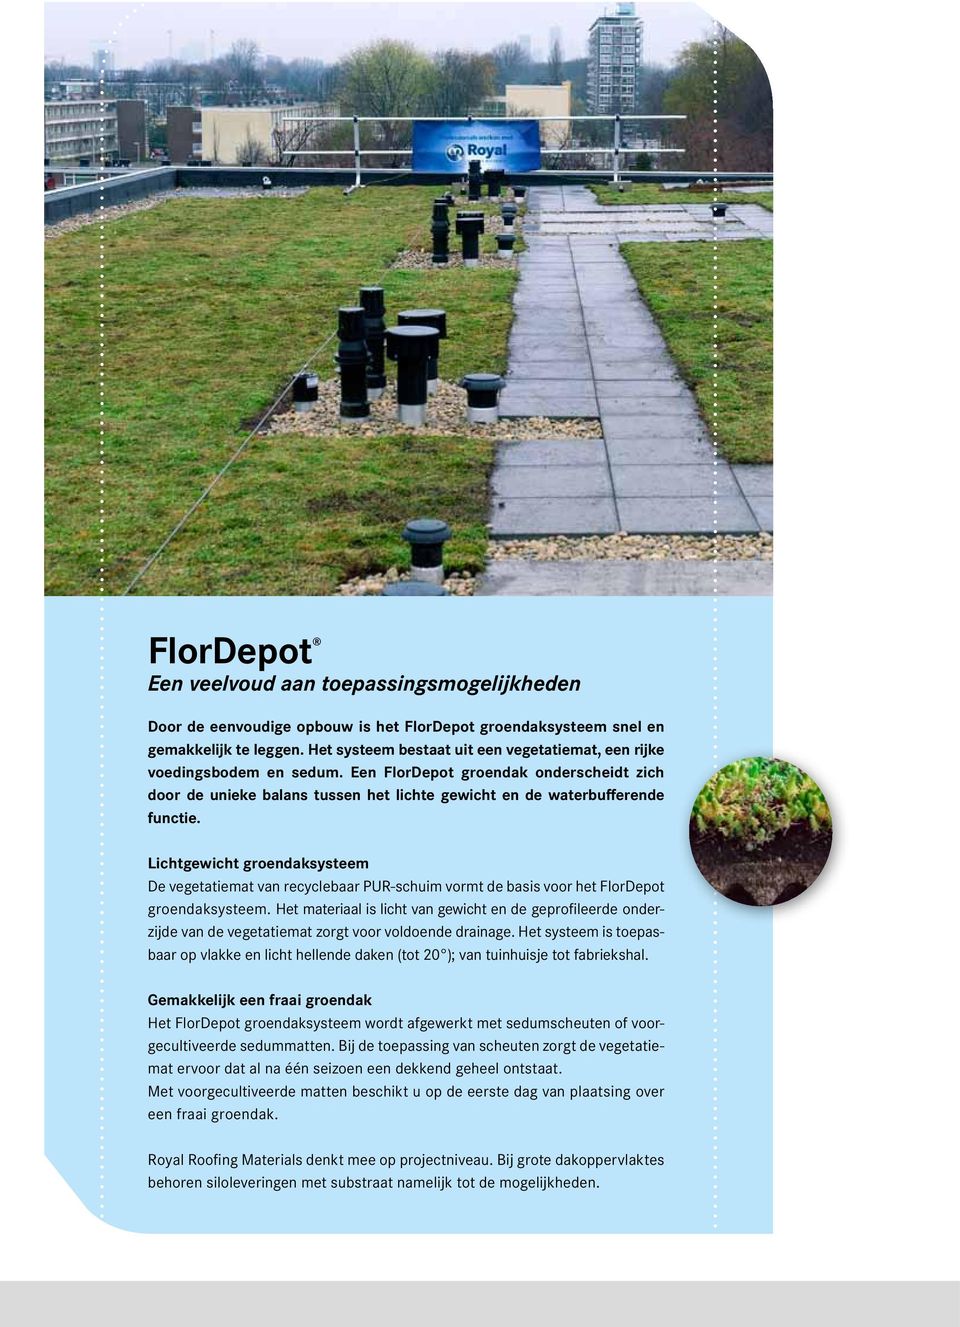 Lichtgewicht groendaksysteem De vegetatiemat van recyclebaar PUR-schuim vormt de basis voor het FlorDepot groendaksysteem.